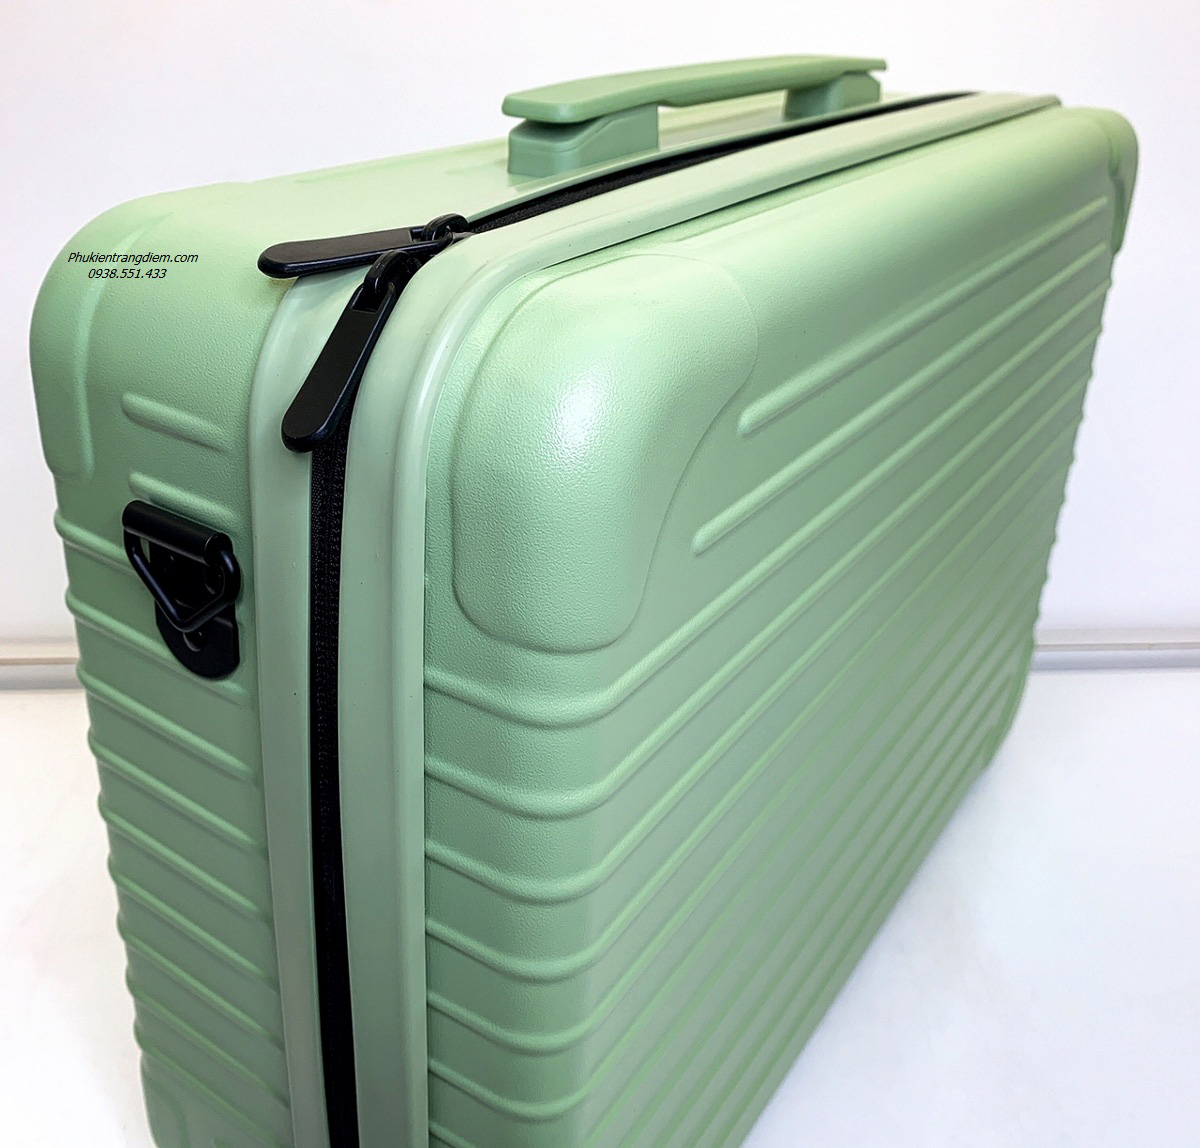 vali cốp trang điểm vỏ trơn 3 màu cao cấp